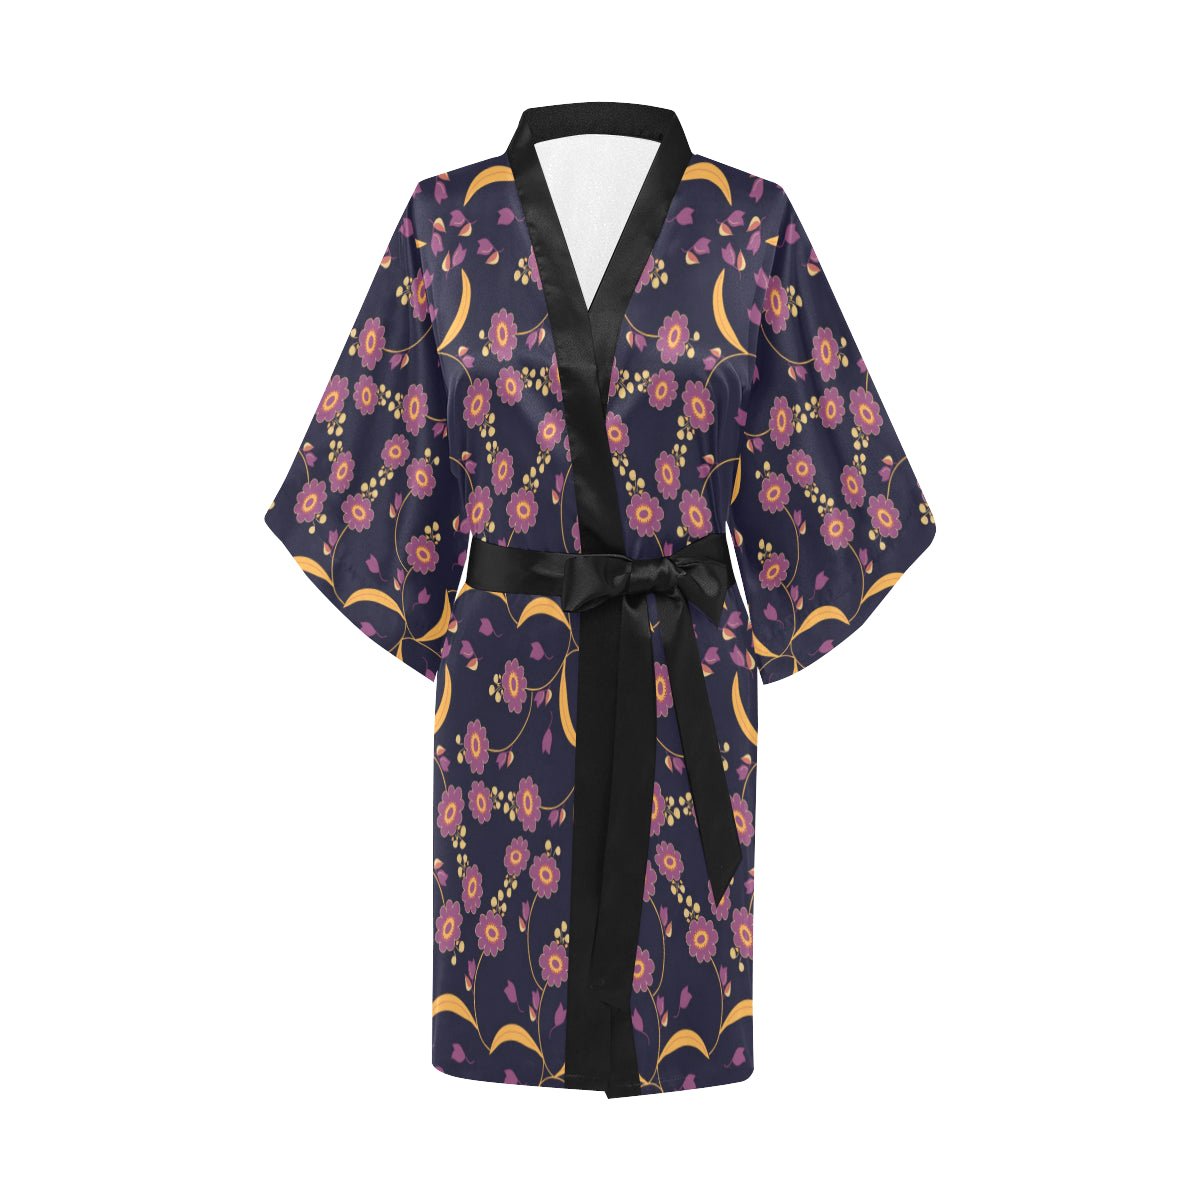 Anemone Pattern Print Design AM012 Women Kimono Robe